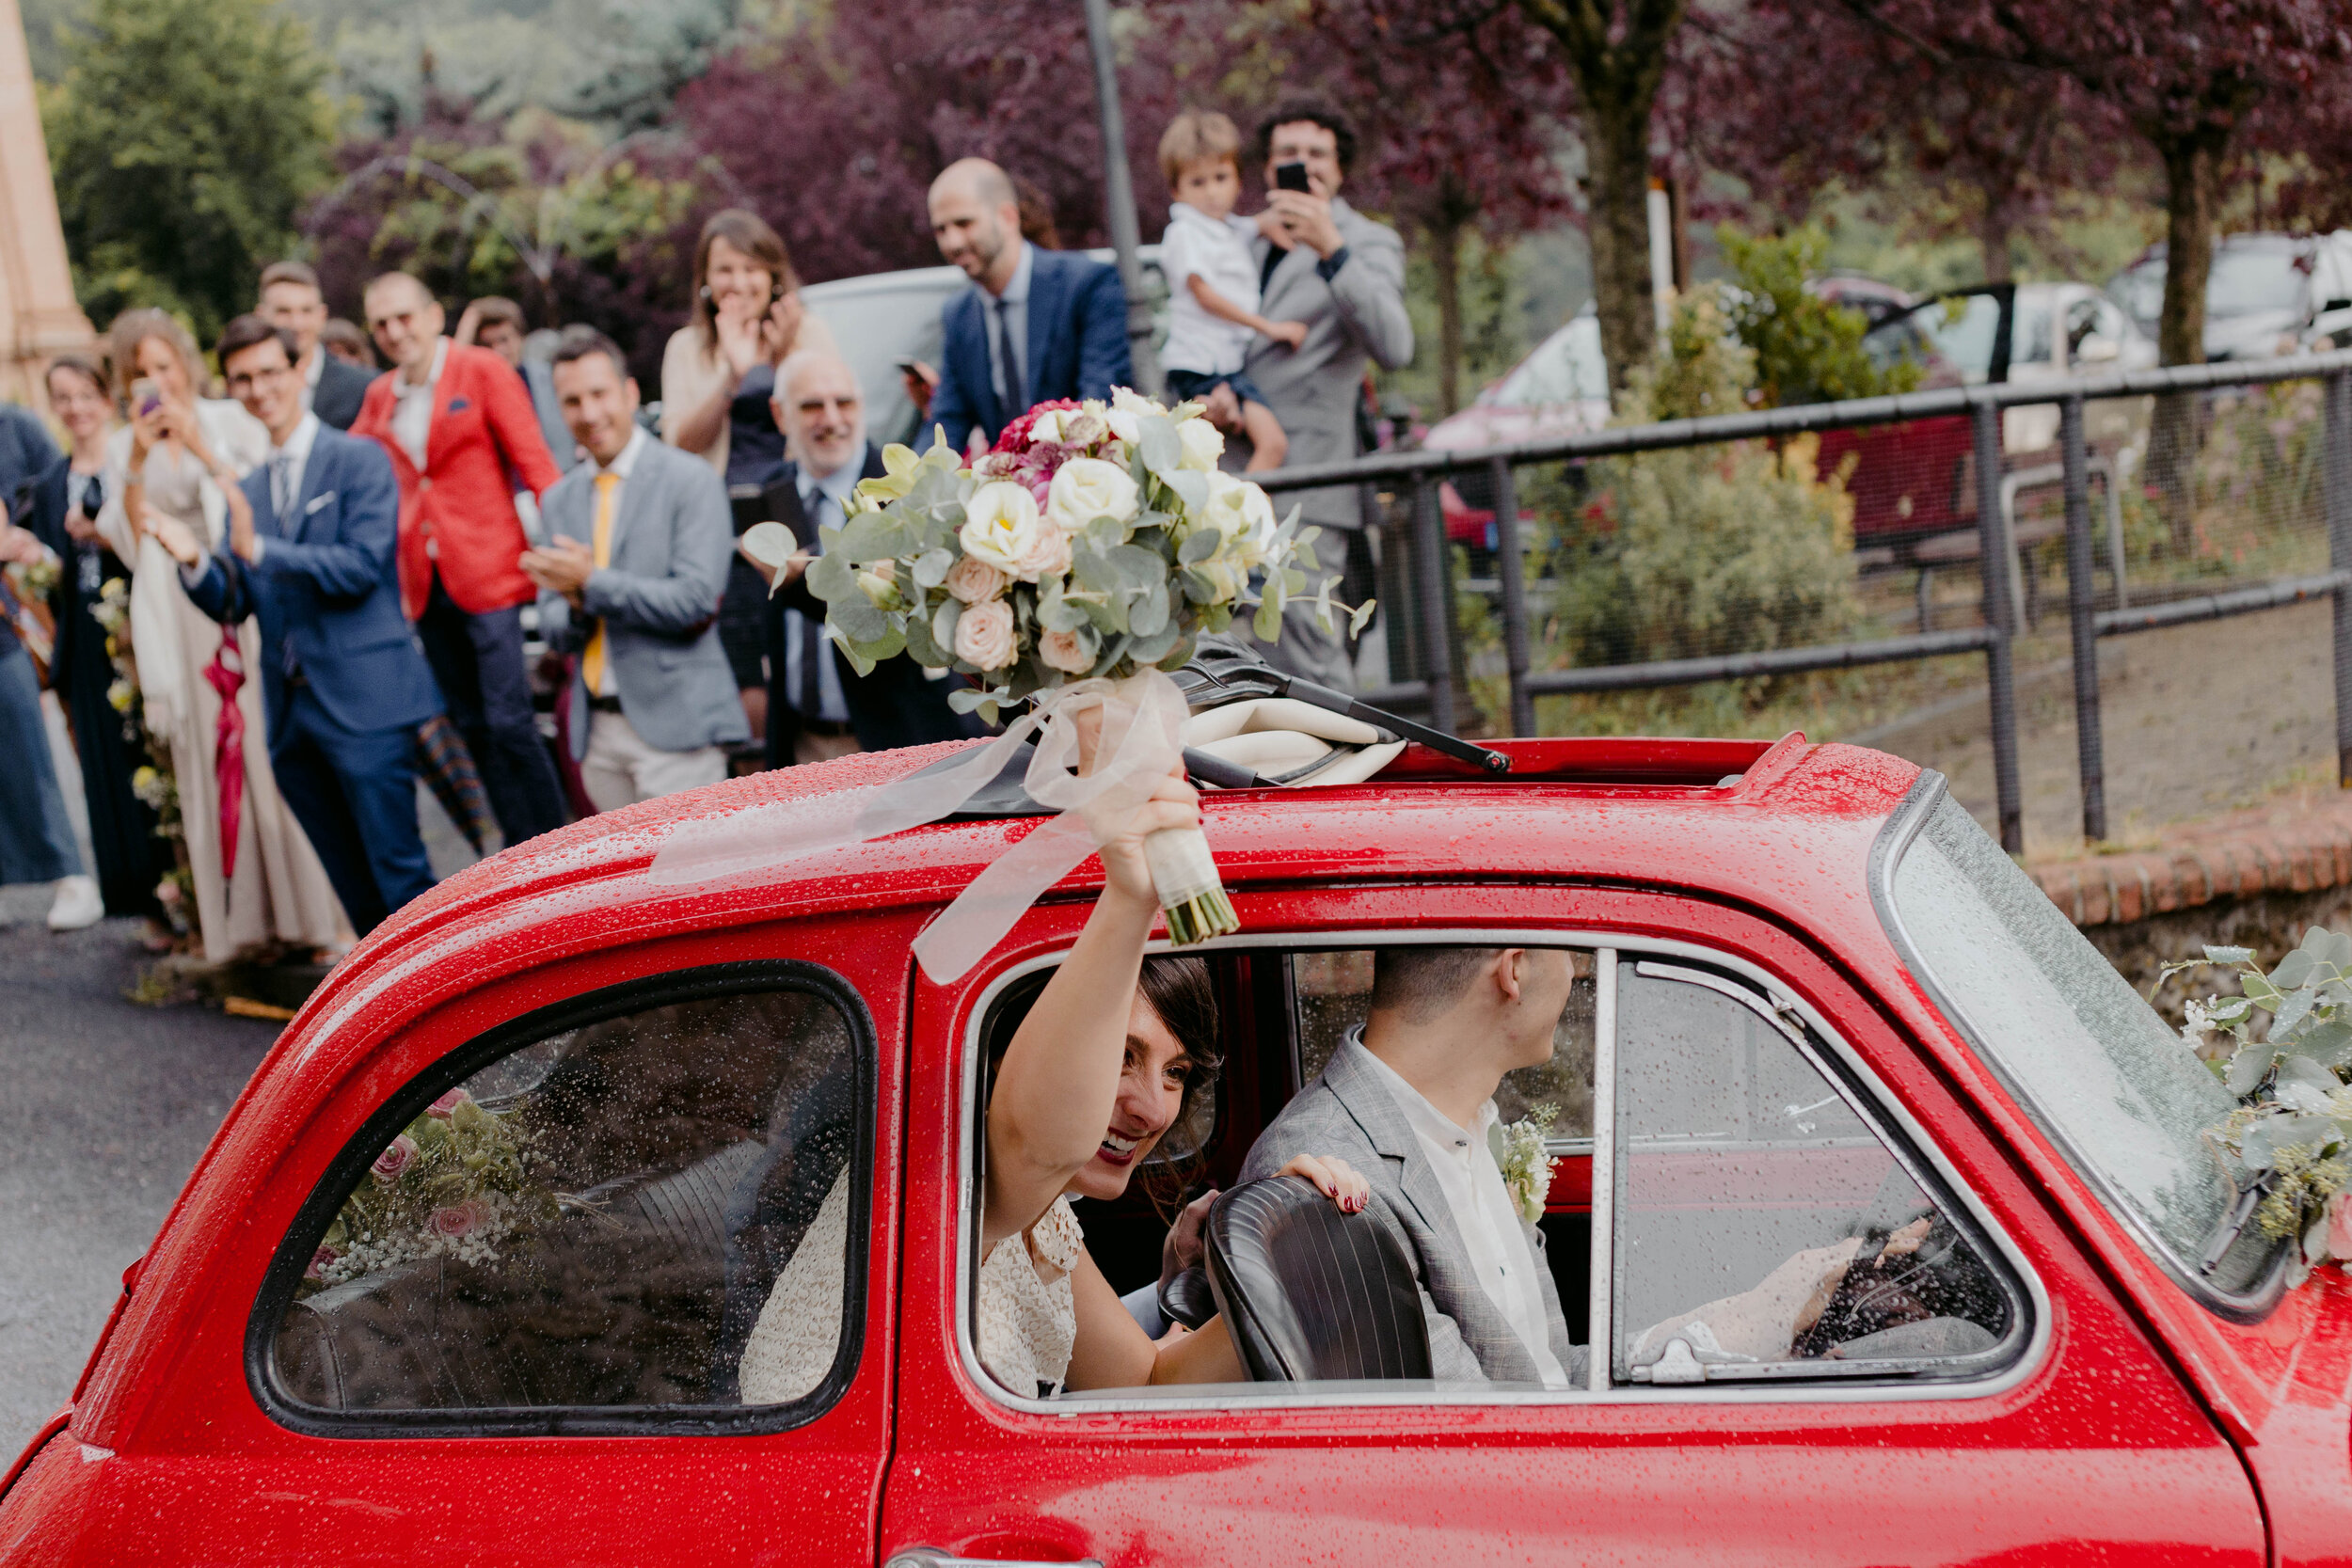 058 - Matrimonio in provincia di Cuneo - Miriam Callegari Fotografa.JPG